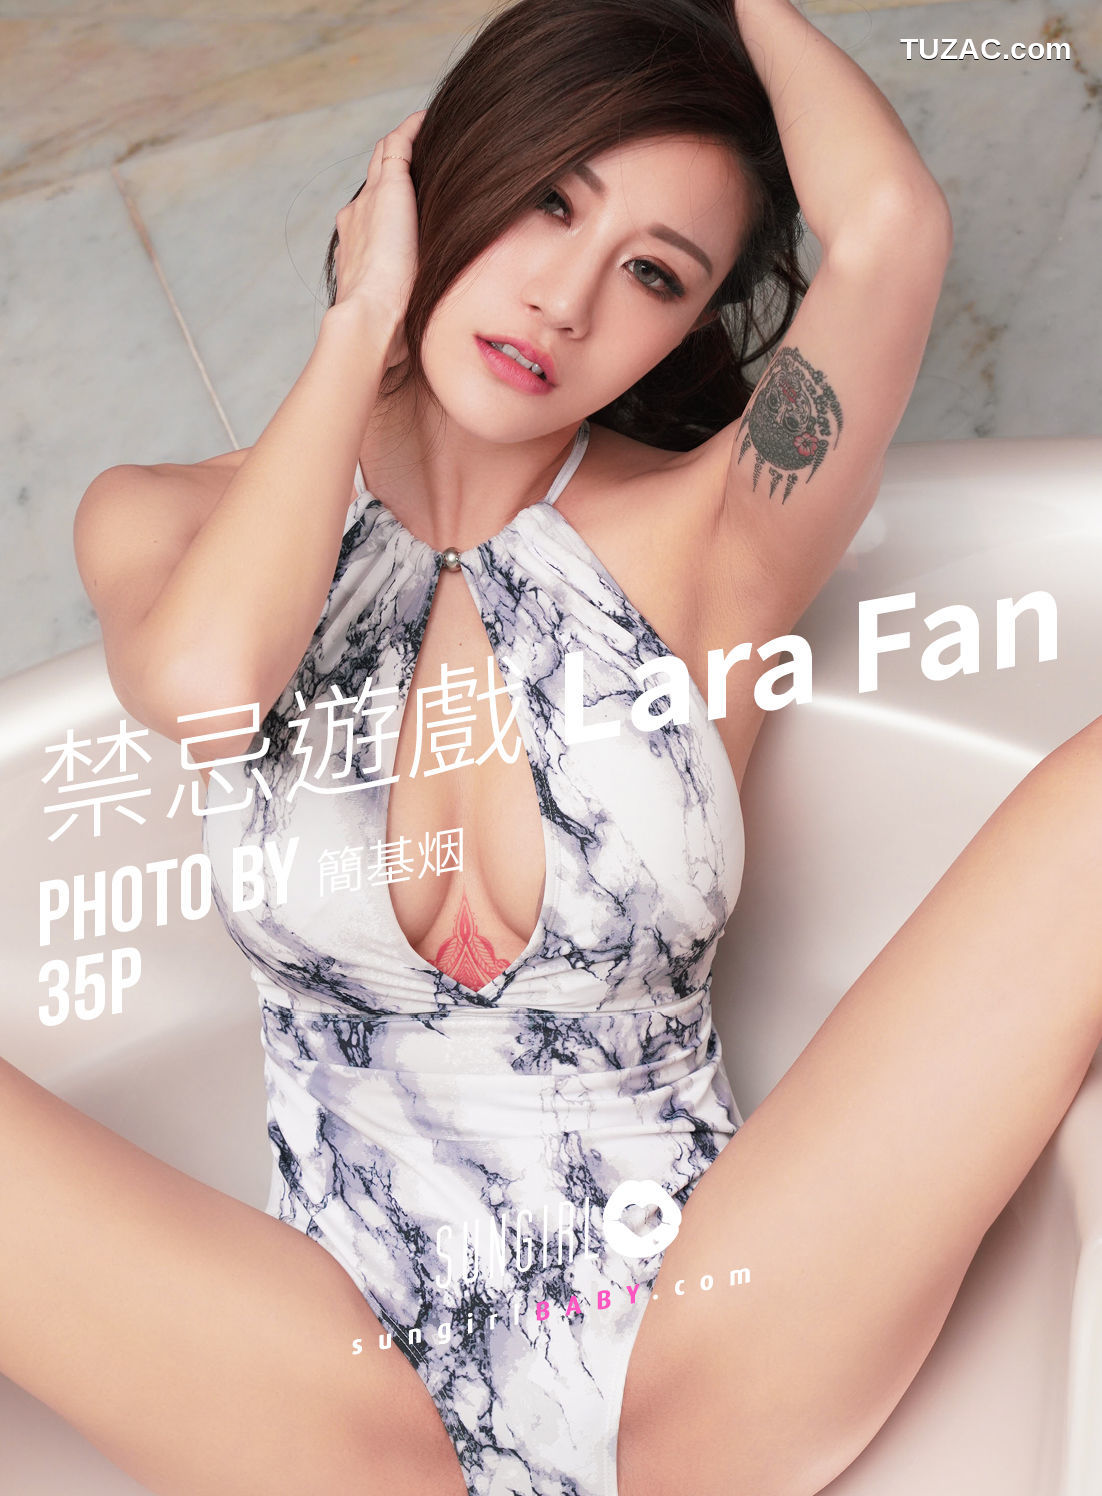 SunGirl阳光宝贝-036-Lara-Fan《禁忌遊戏》